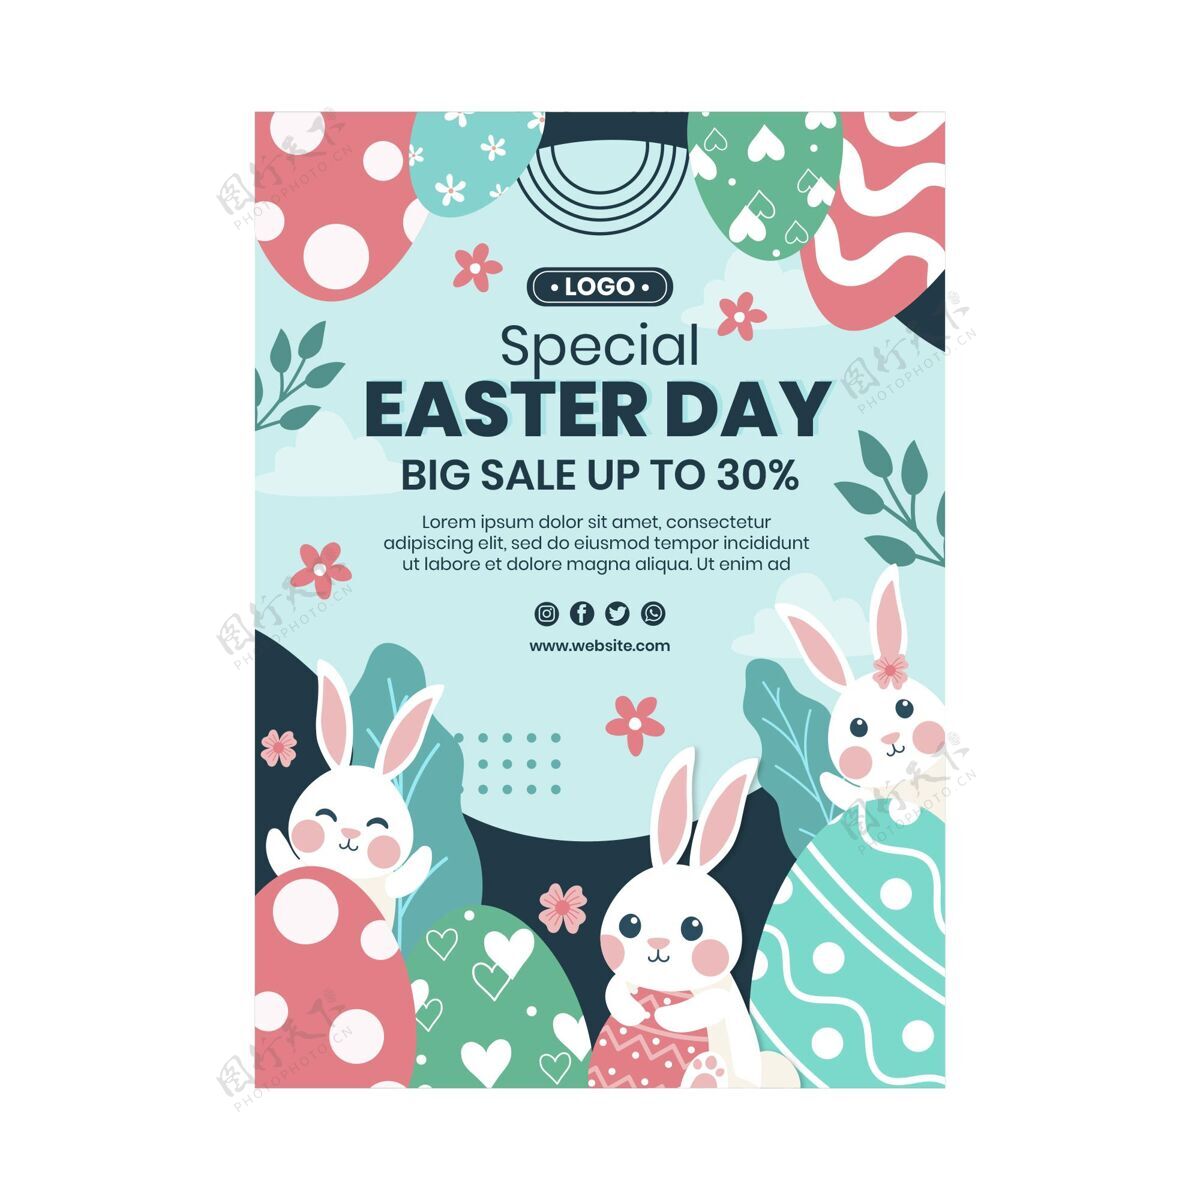 复活节复活节销售垂直海报模板教复活节兔子模板